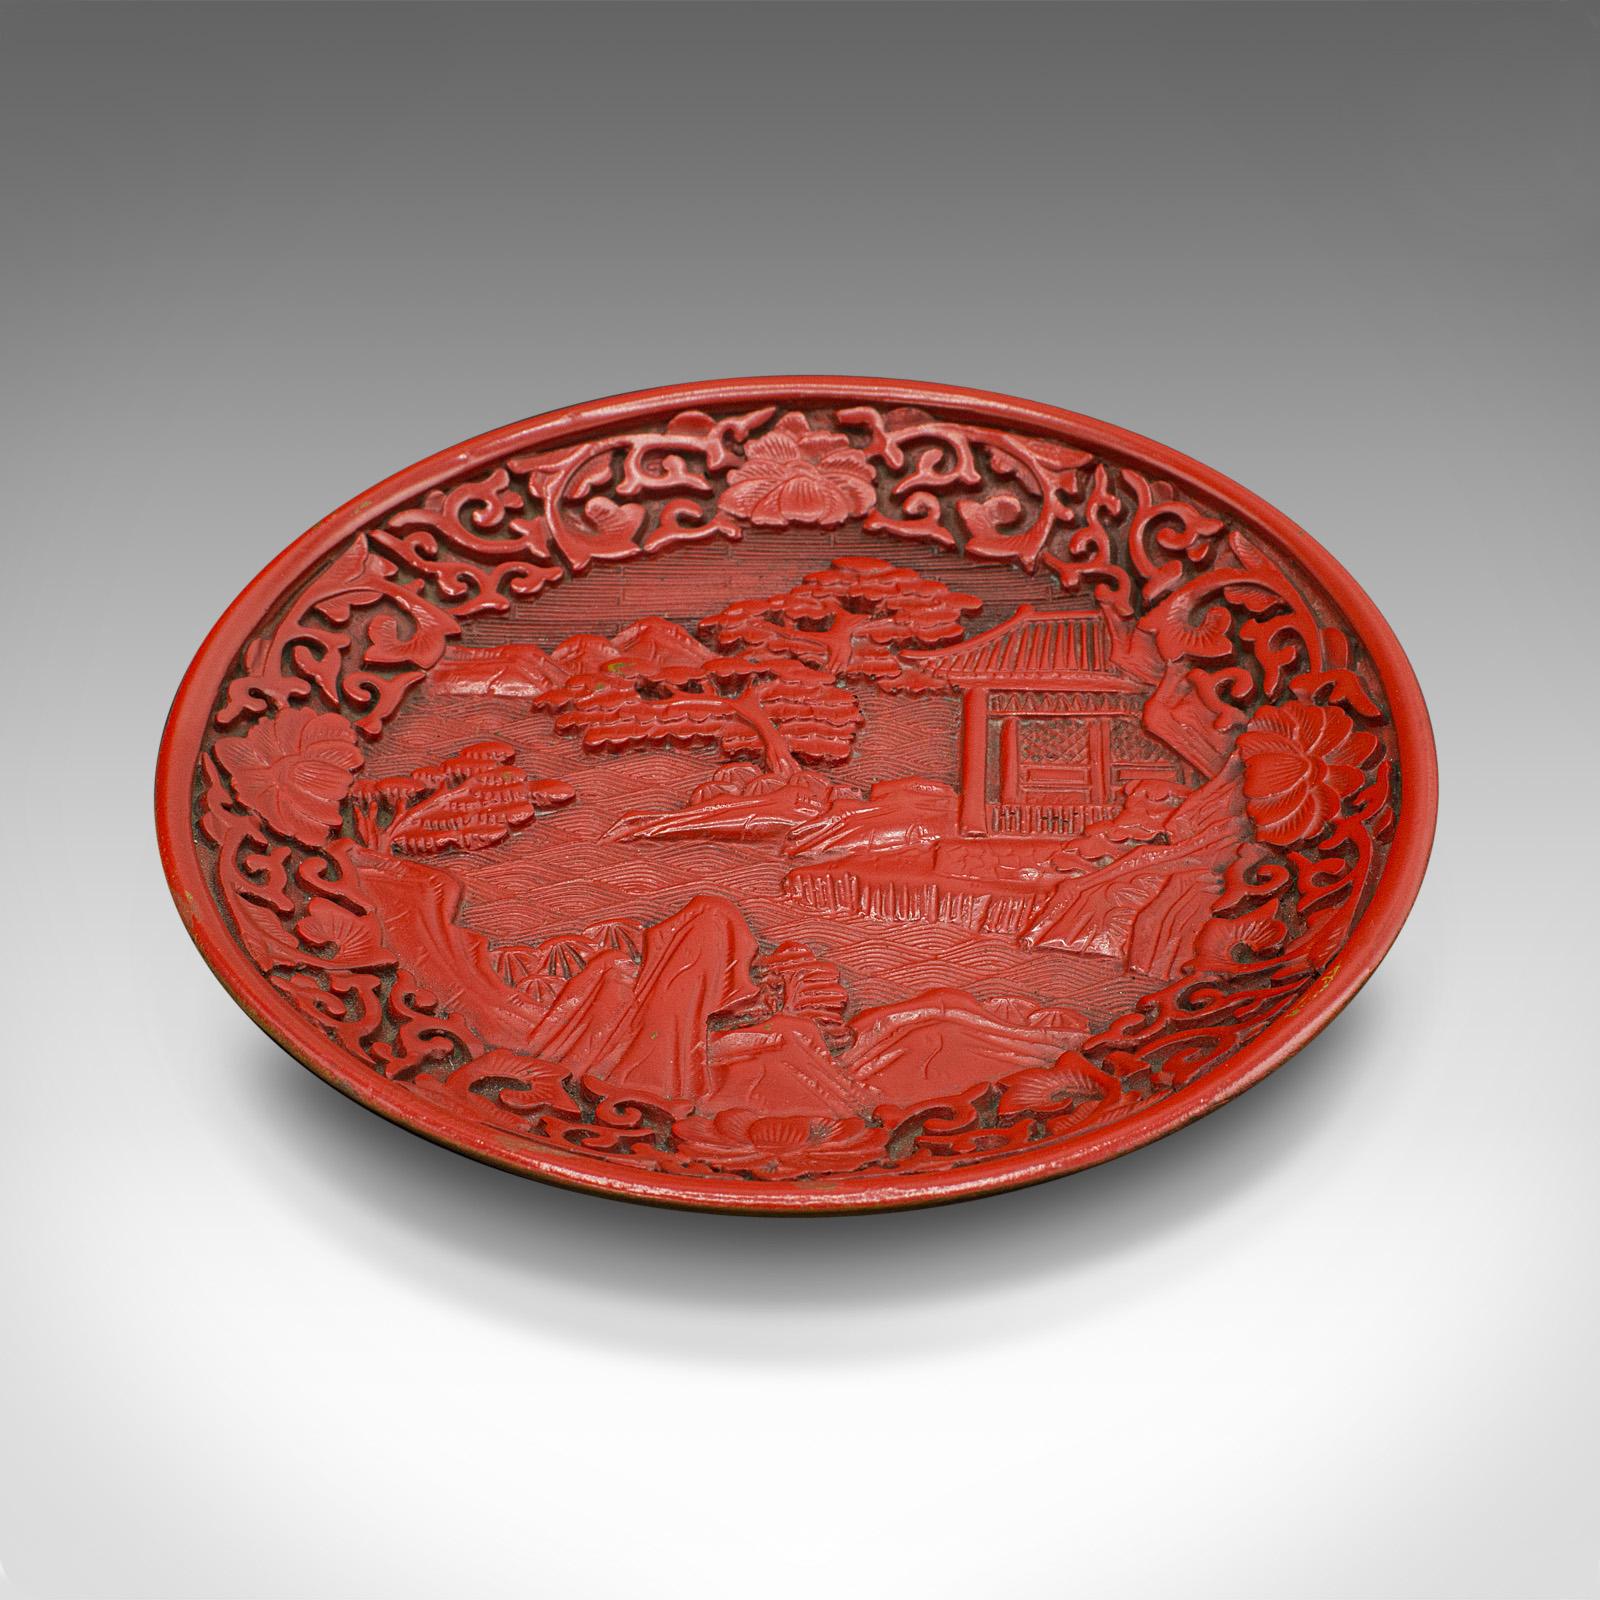 Il s'agit d'un petit plat décoratif antique en cinabre. Assiette de présentation chinoise en laque rouge, datant de la dynastie Qing, vers 1900.

Exemple frappant de l'art décoratif chinois.
Présente une patine d'ancienneté souhaitable - en très